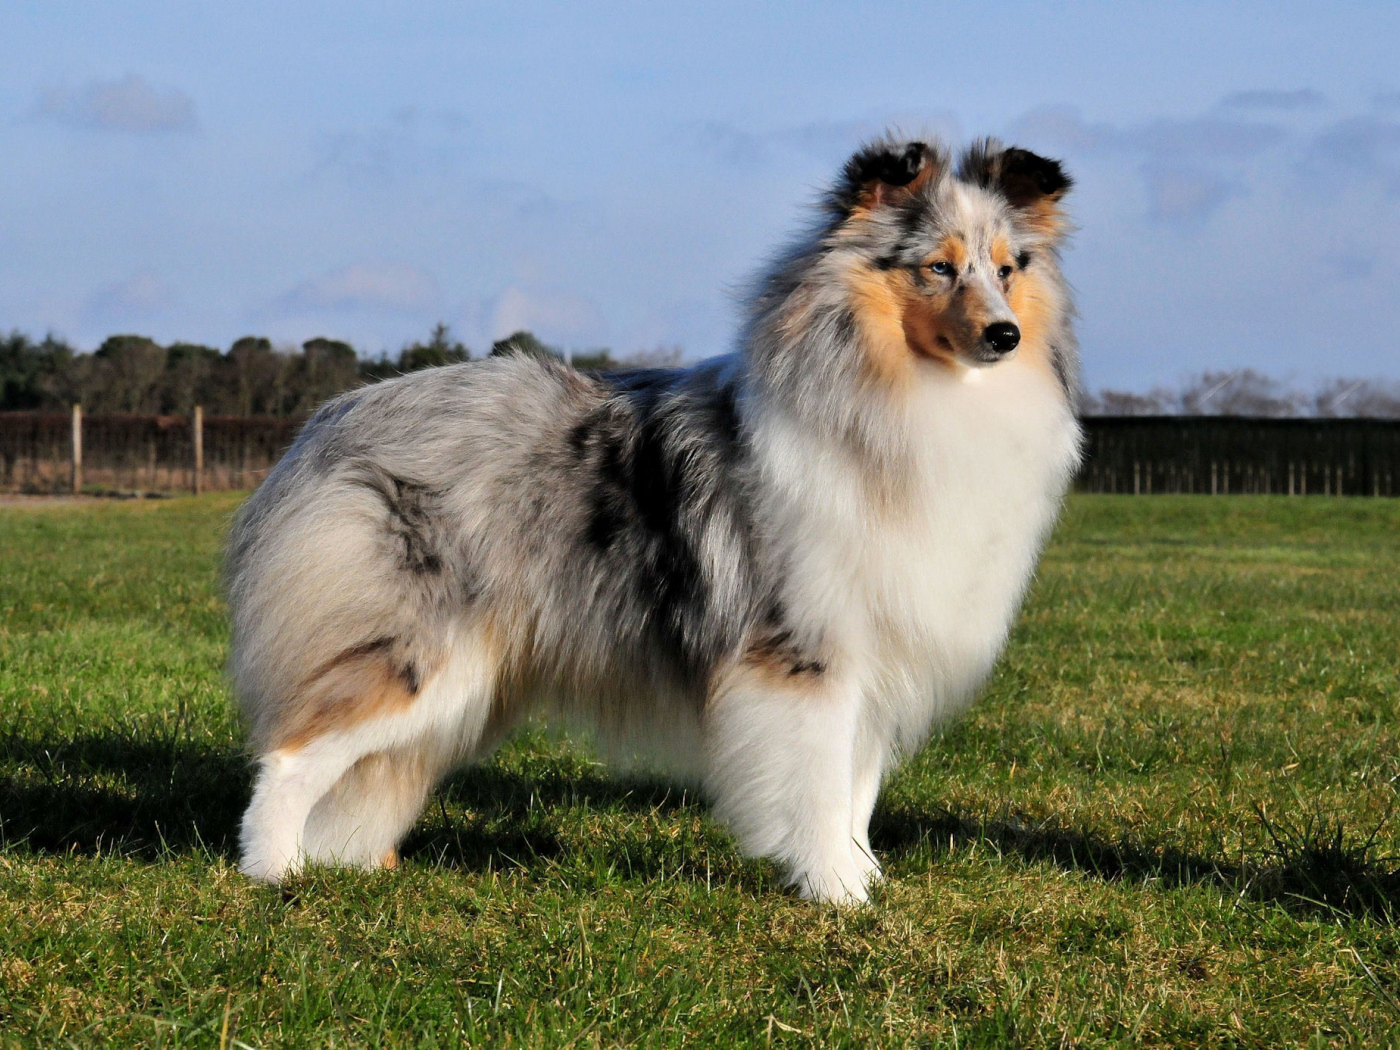 Sheltie breed dog posing outdoors